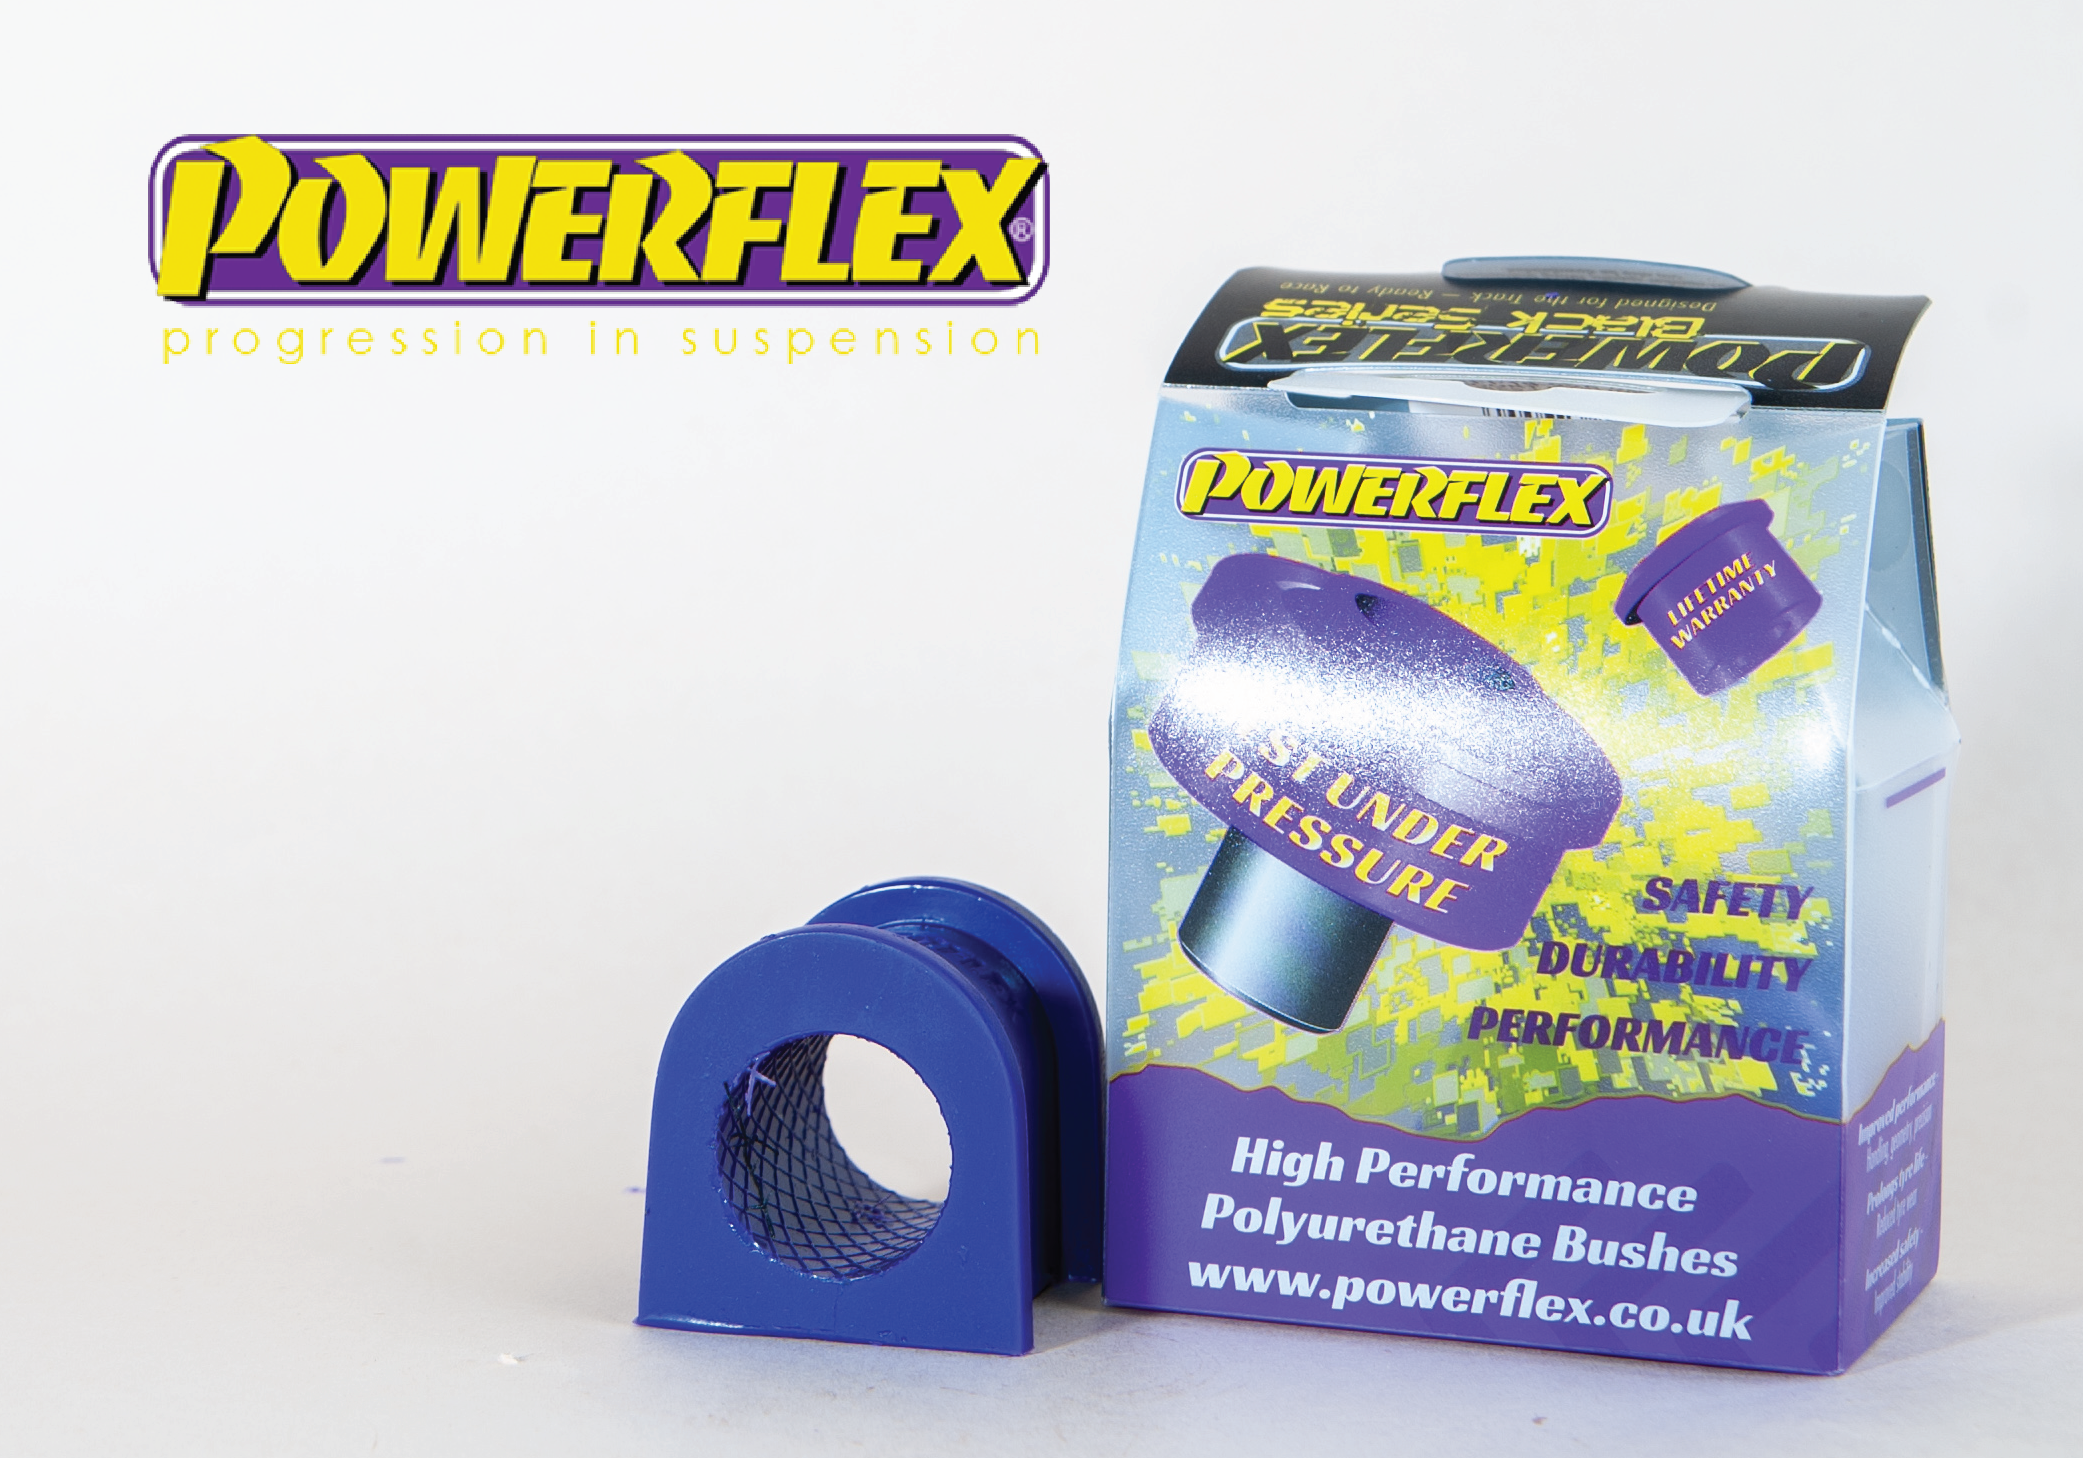 Powerflex Images-10-01.png